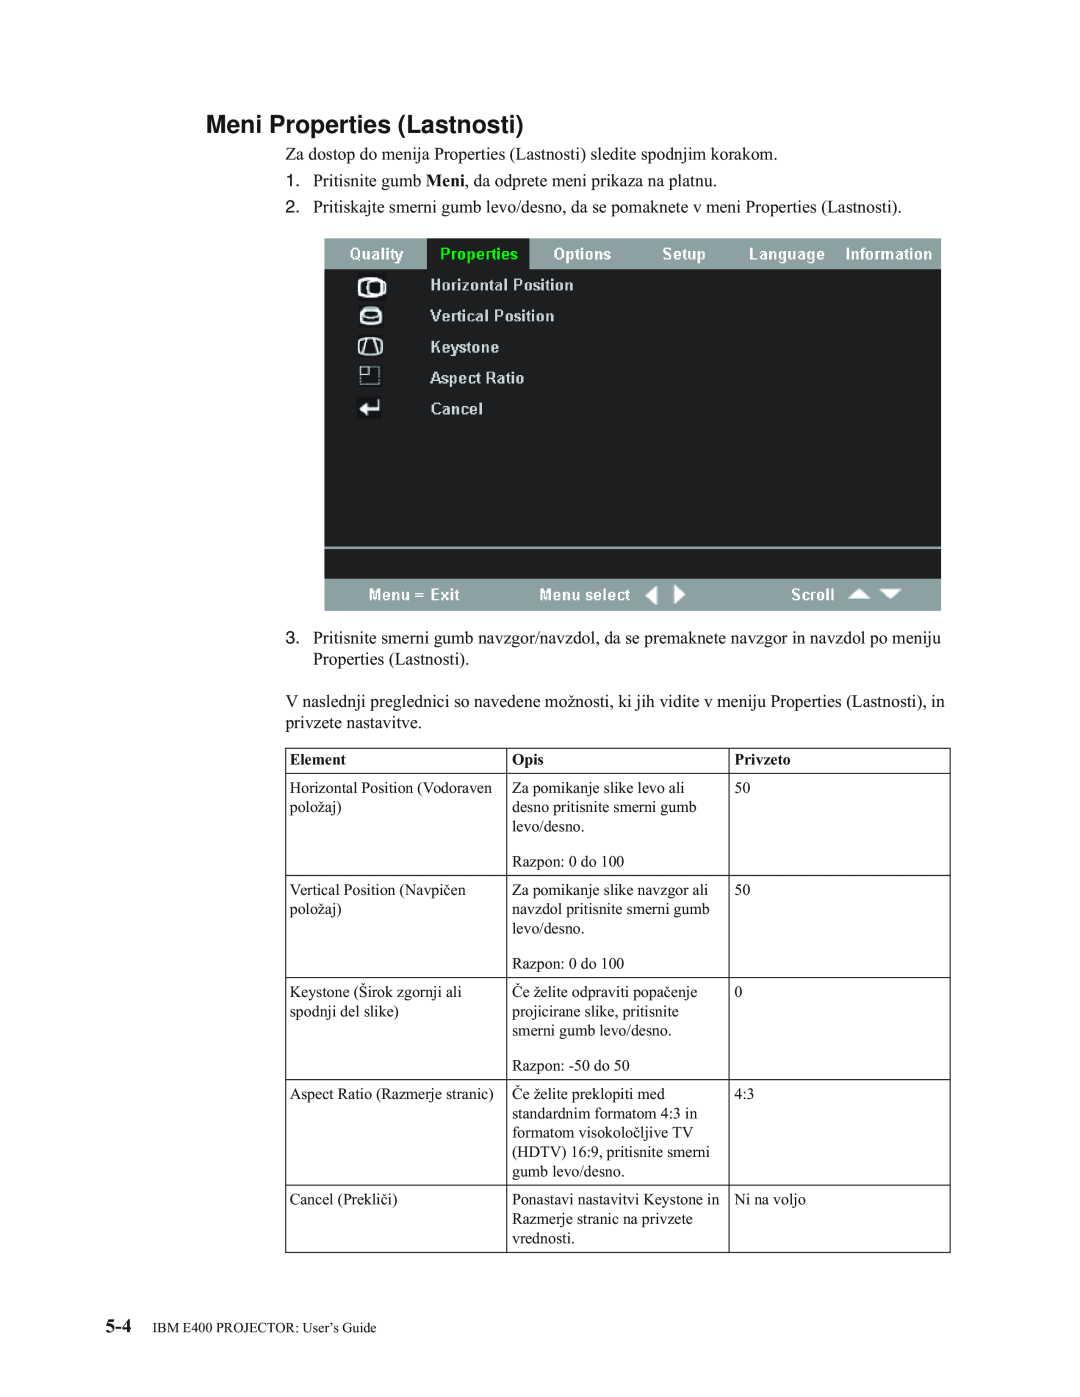 IBM manual Meni Properties Lastnosti, IBM E400 PROJECTOR User’s Guide 